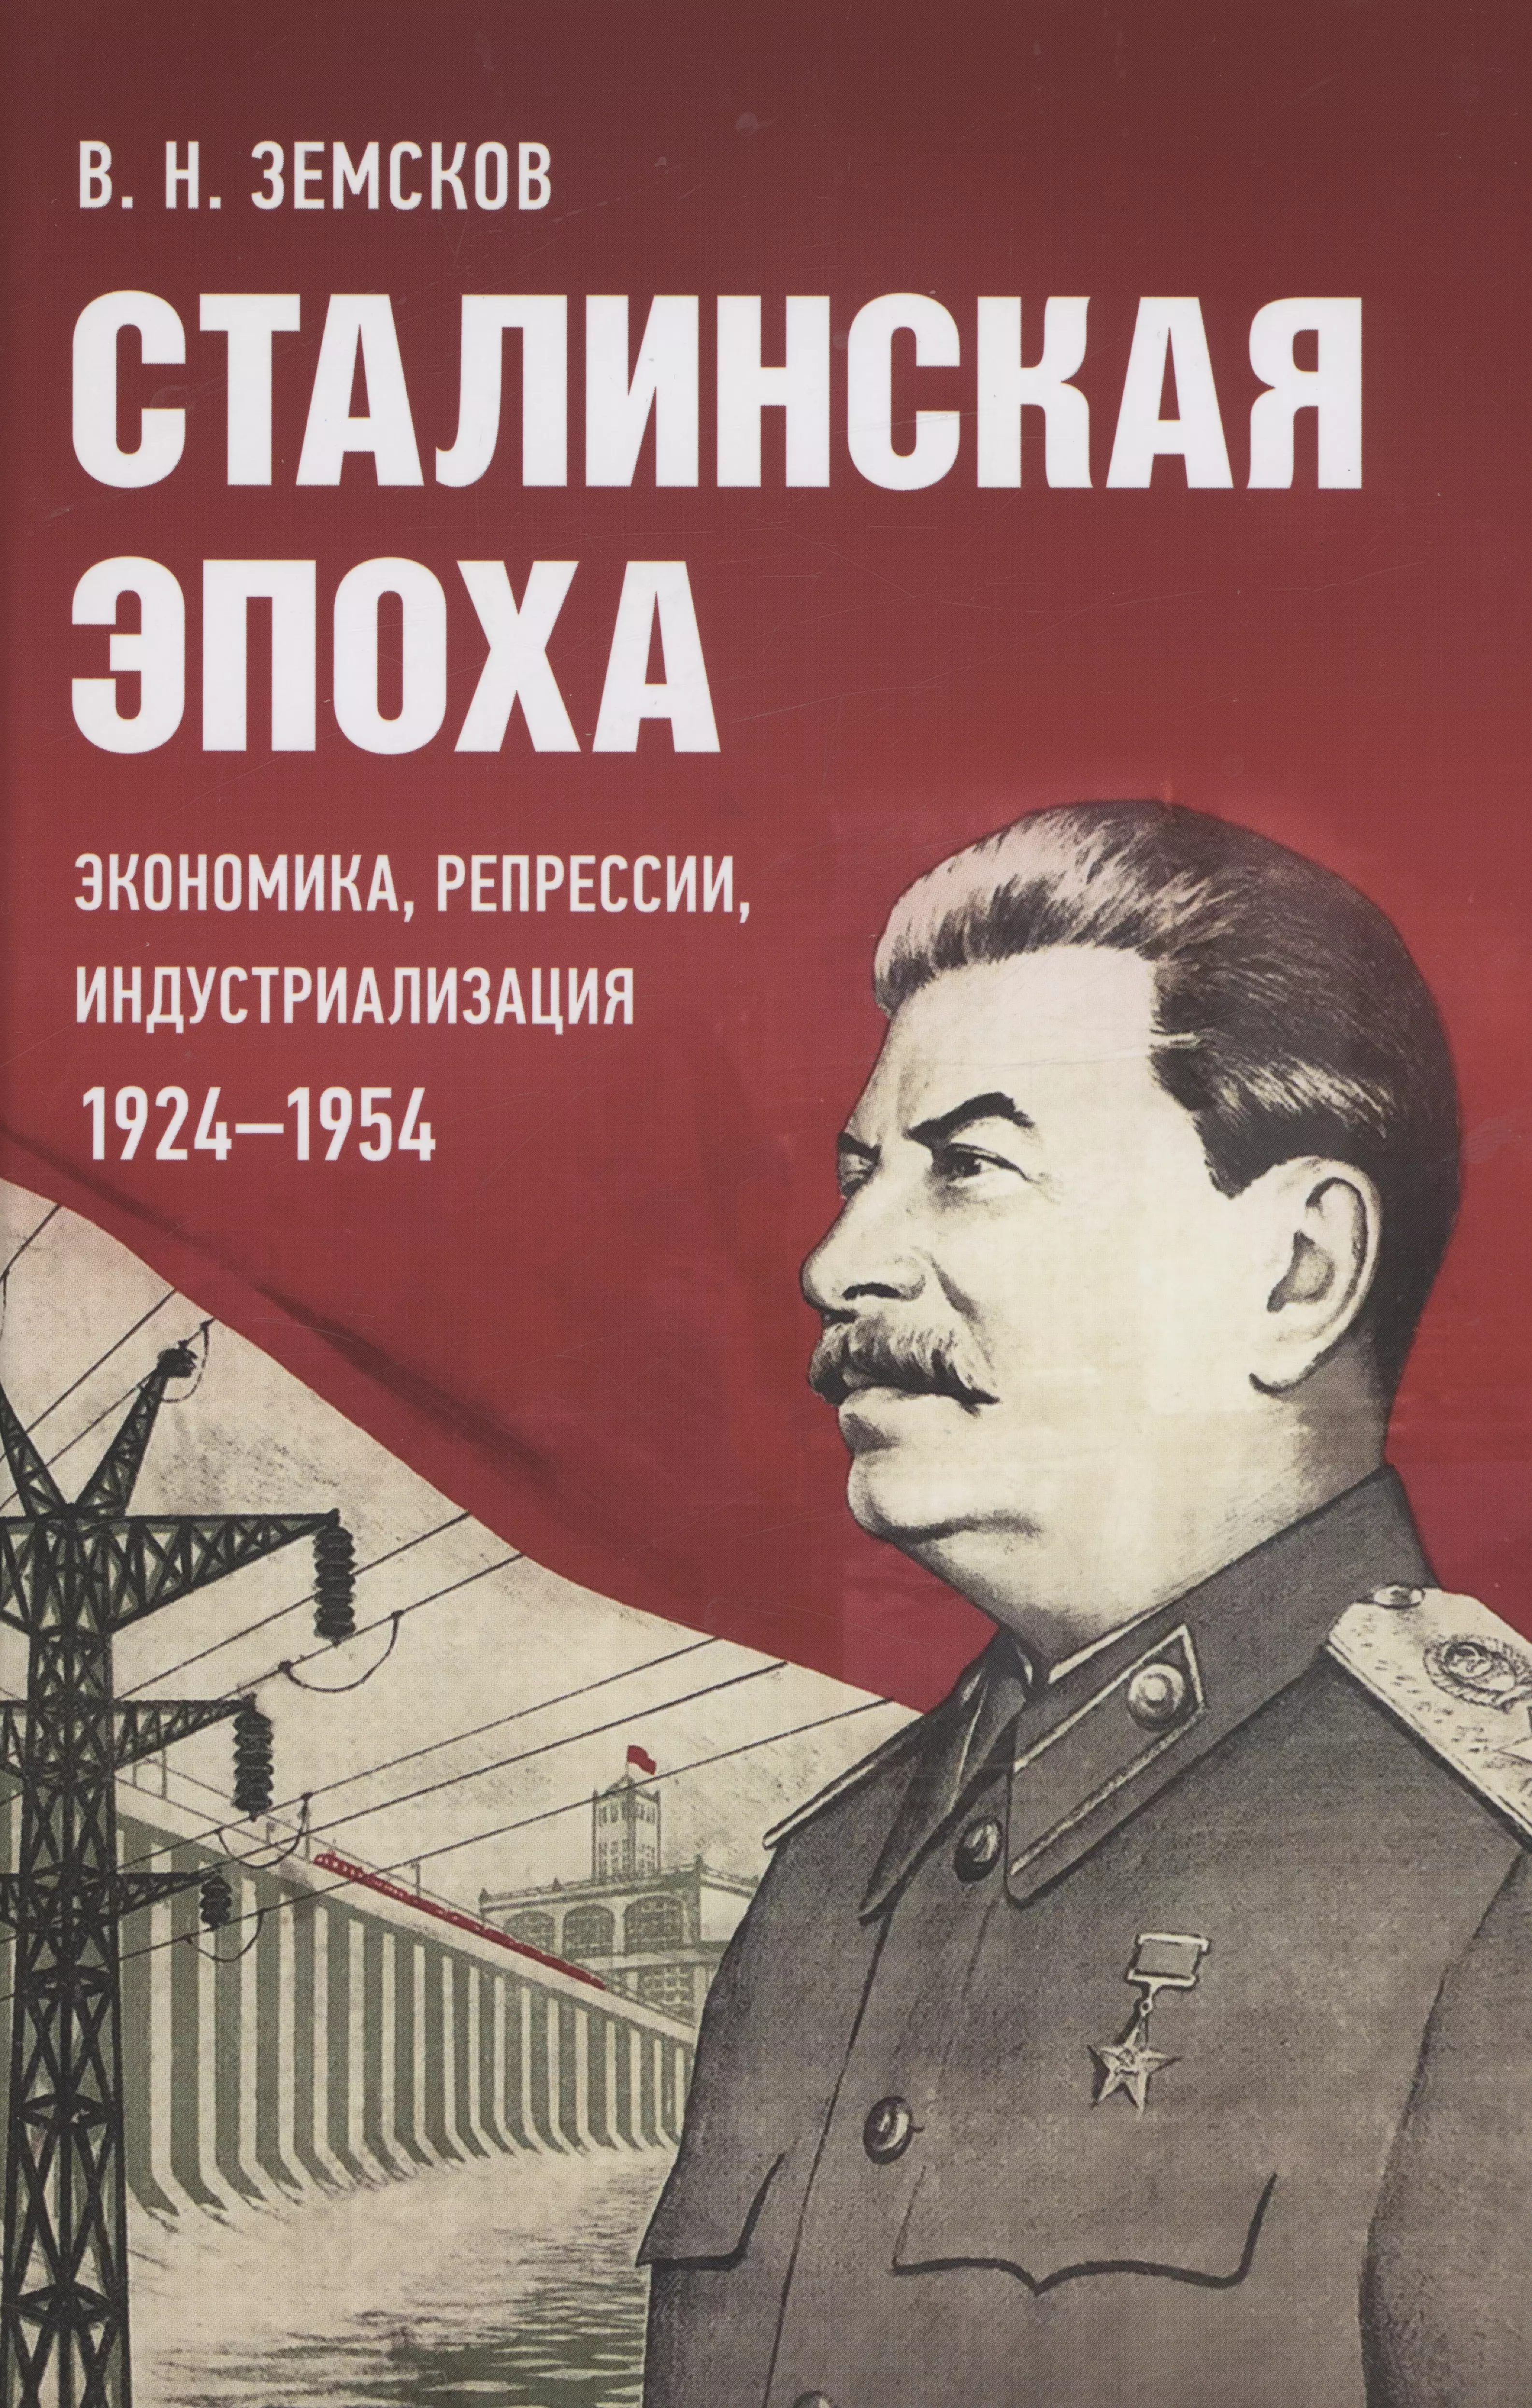 верхотуров д н сталинская индустриализация Сталинская эпоха: экономика, репрессии, индустриализация. 1924–1954